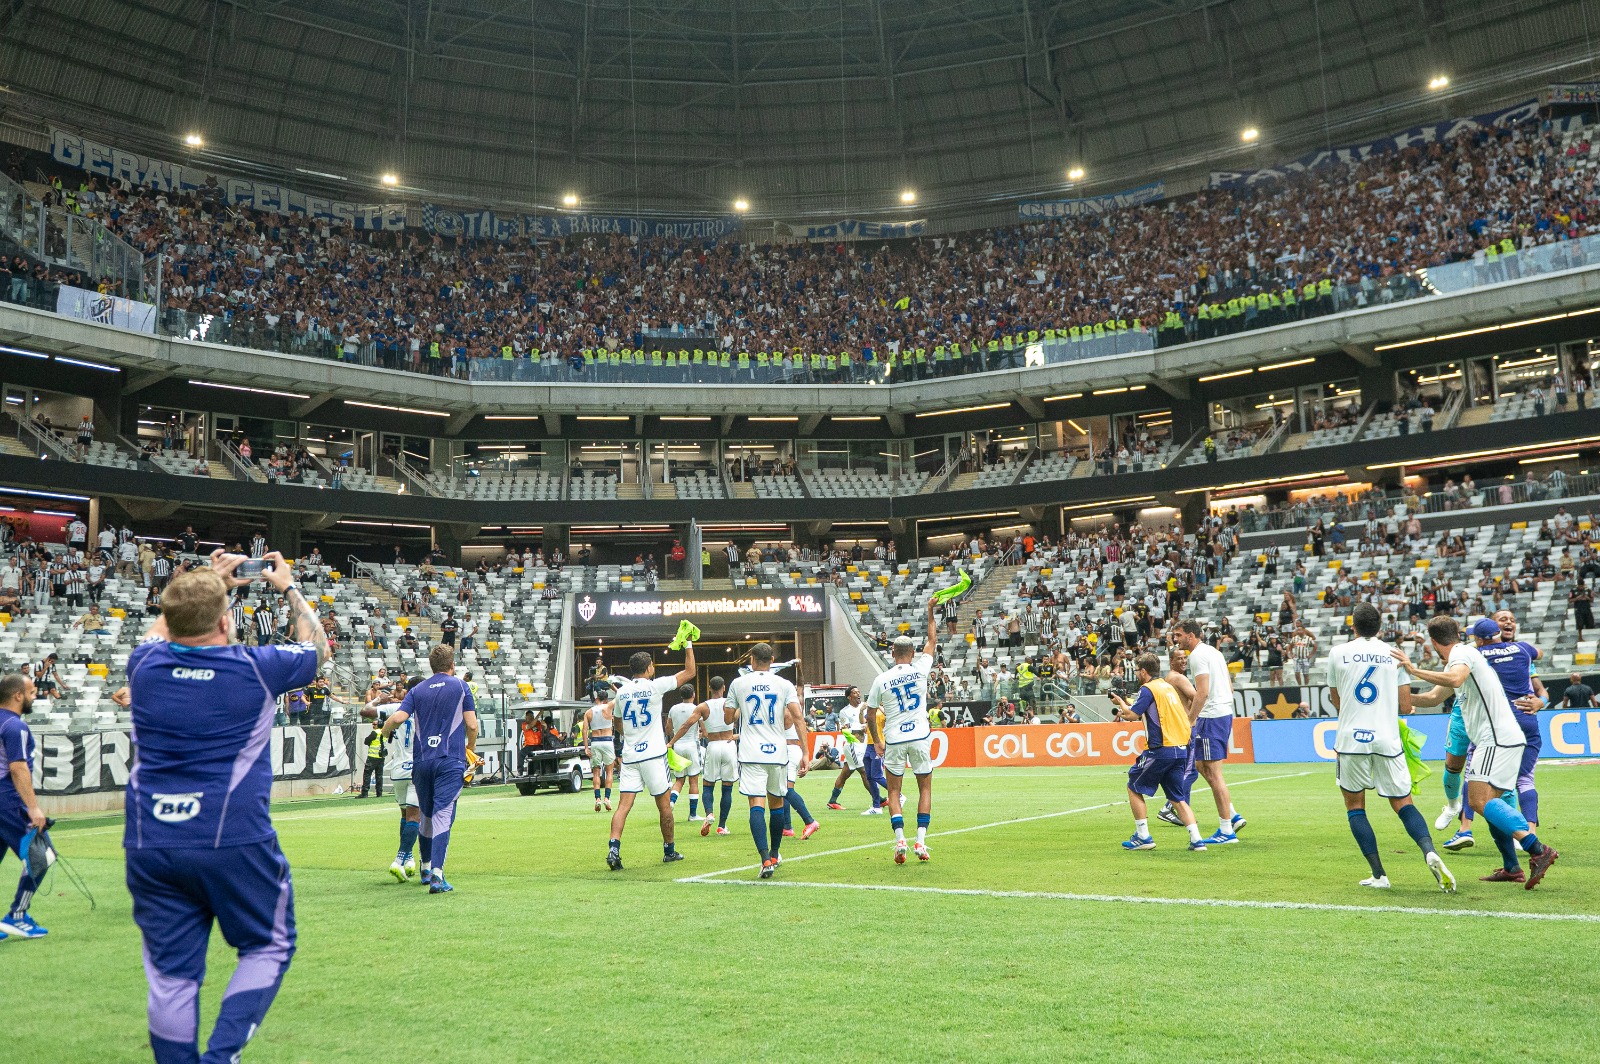 HISTÓRICO!!! Com atuação gigantesca, Cruzeiro é o primeiro vencedor nos clássicos contra o Atlético-MG na Arena MRV